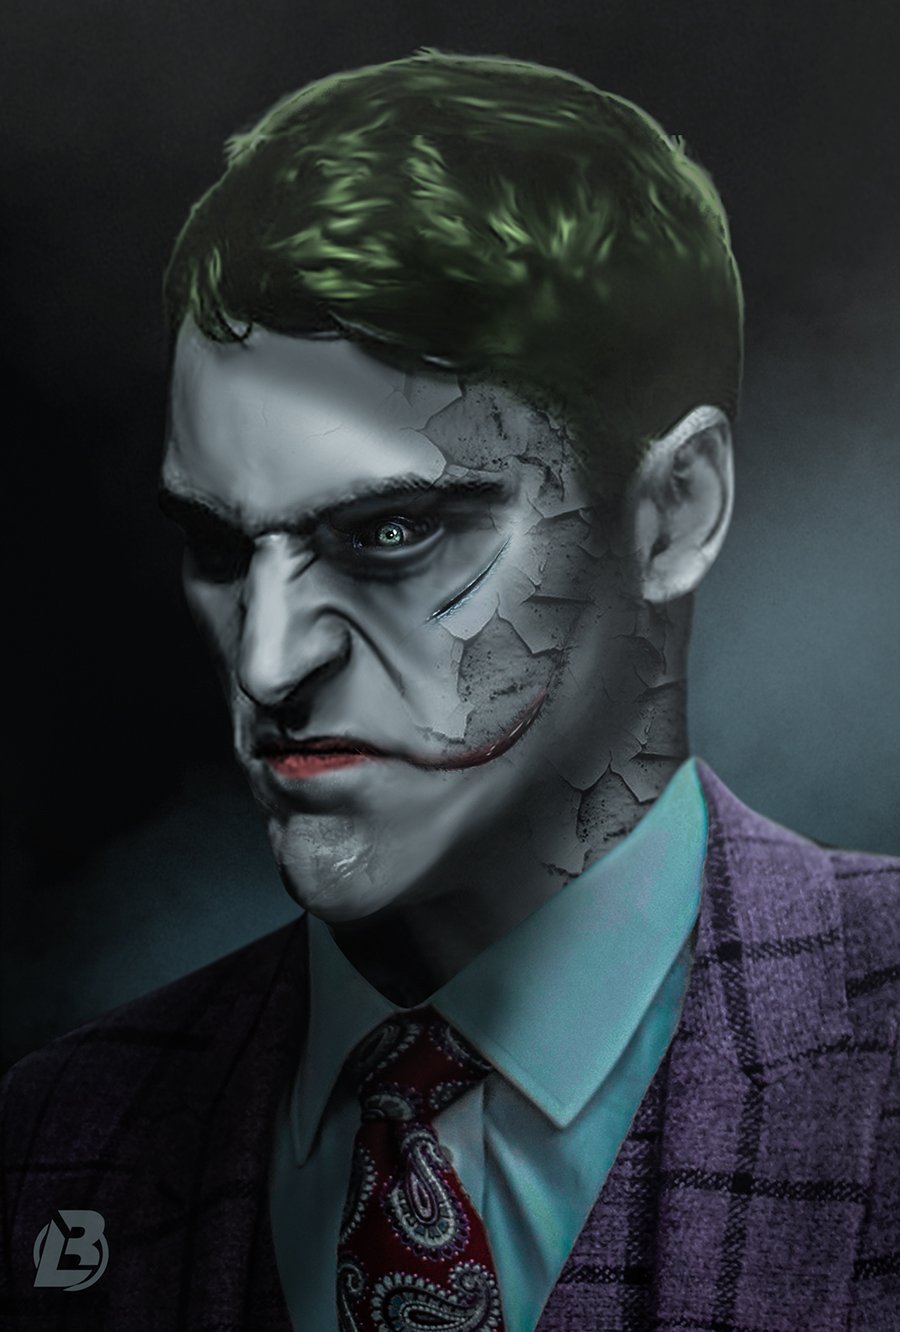 Joker by BossLogic